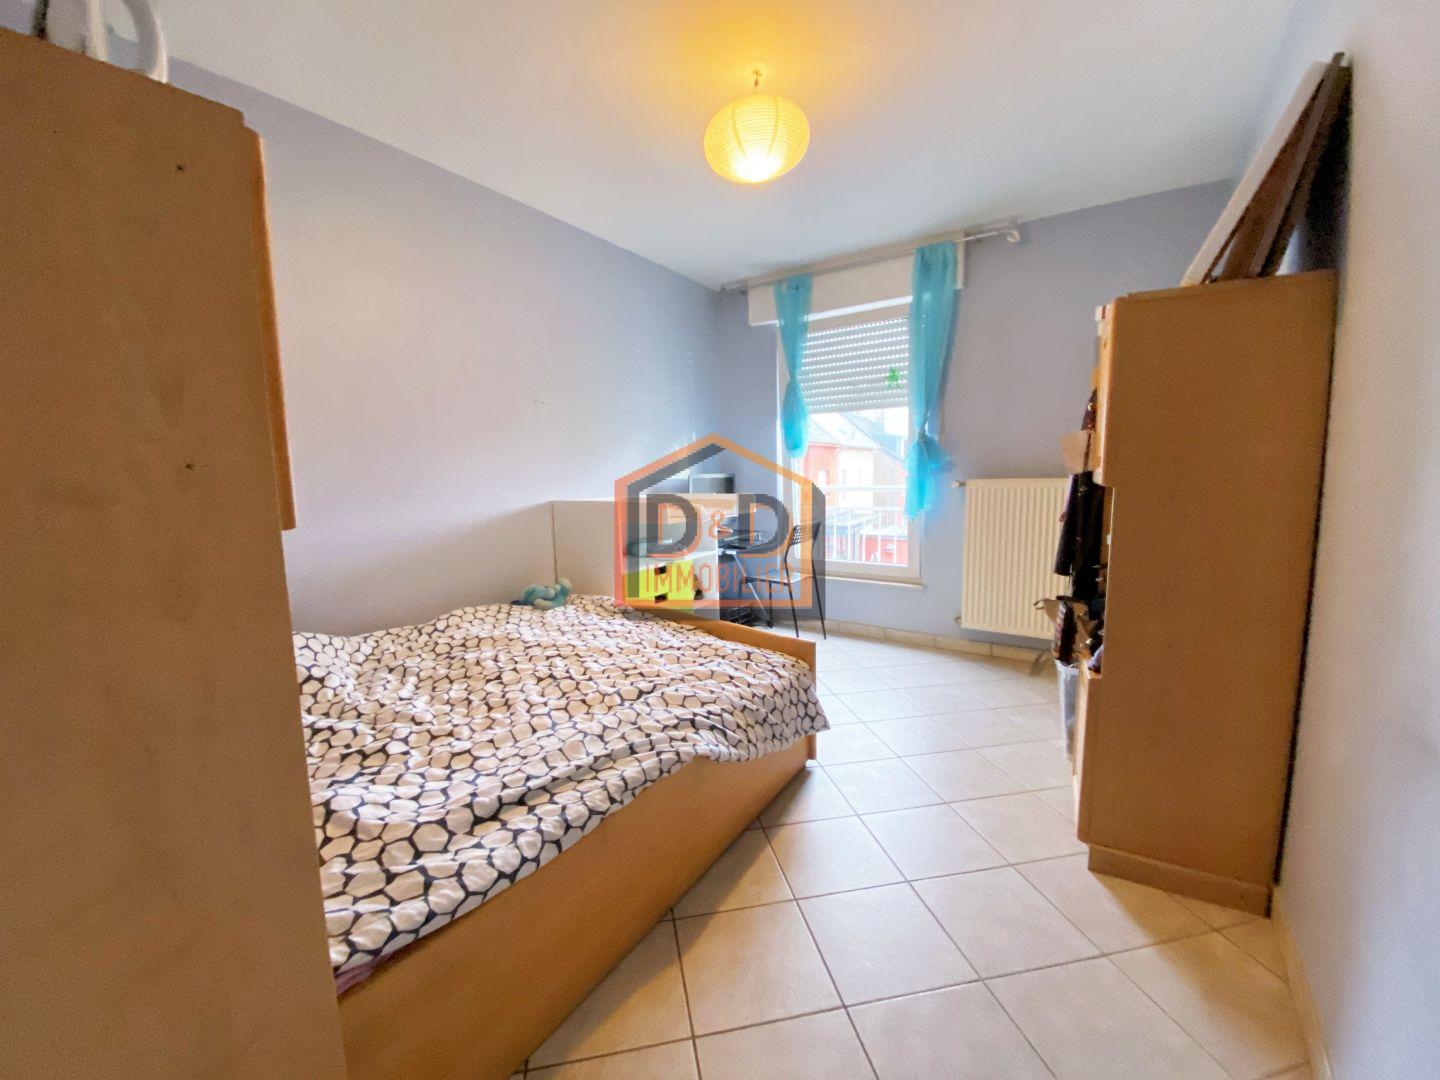 Appartement à Petange, 70 m², 2 chambres, 1 salle de bain, 1 300 €/mois